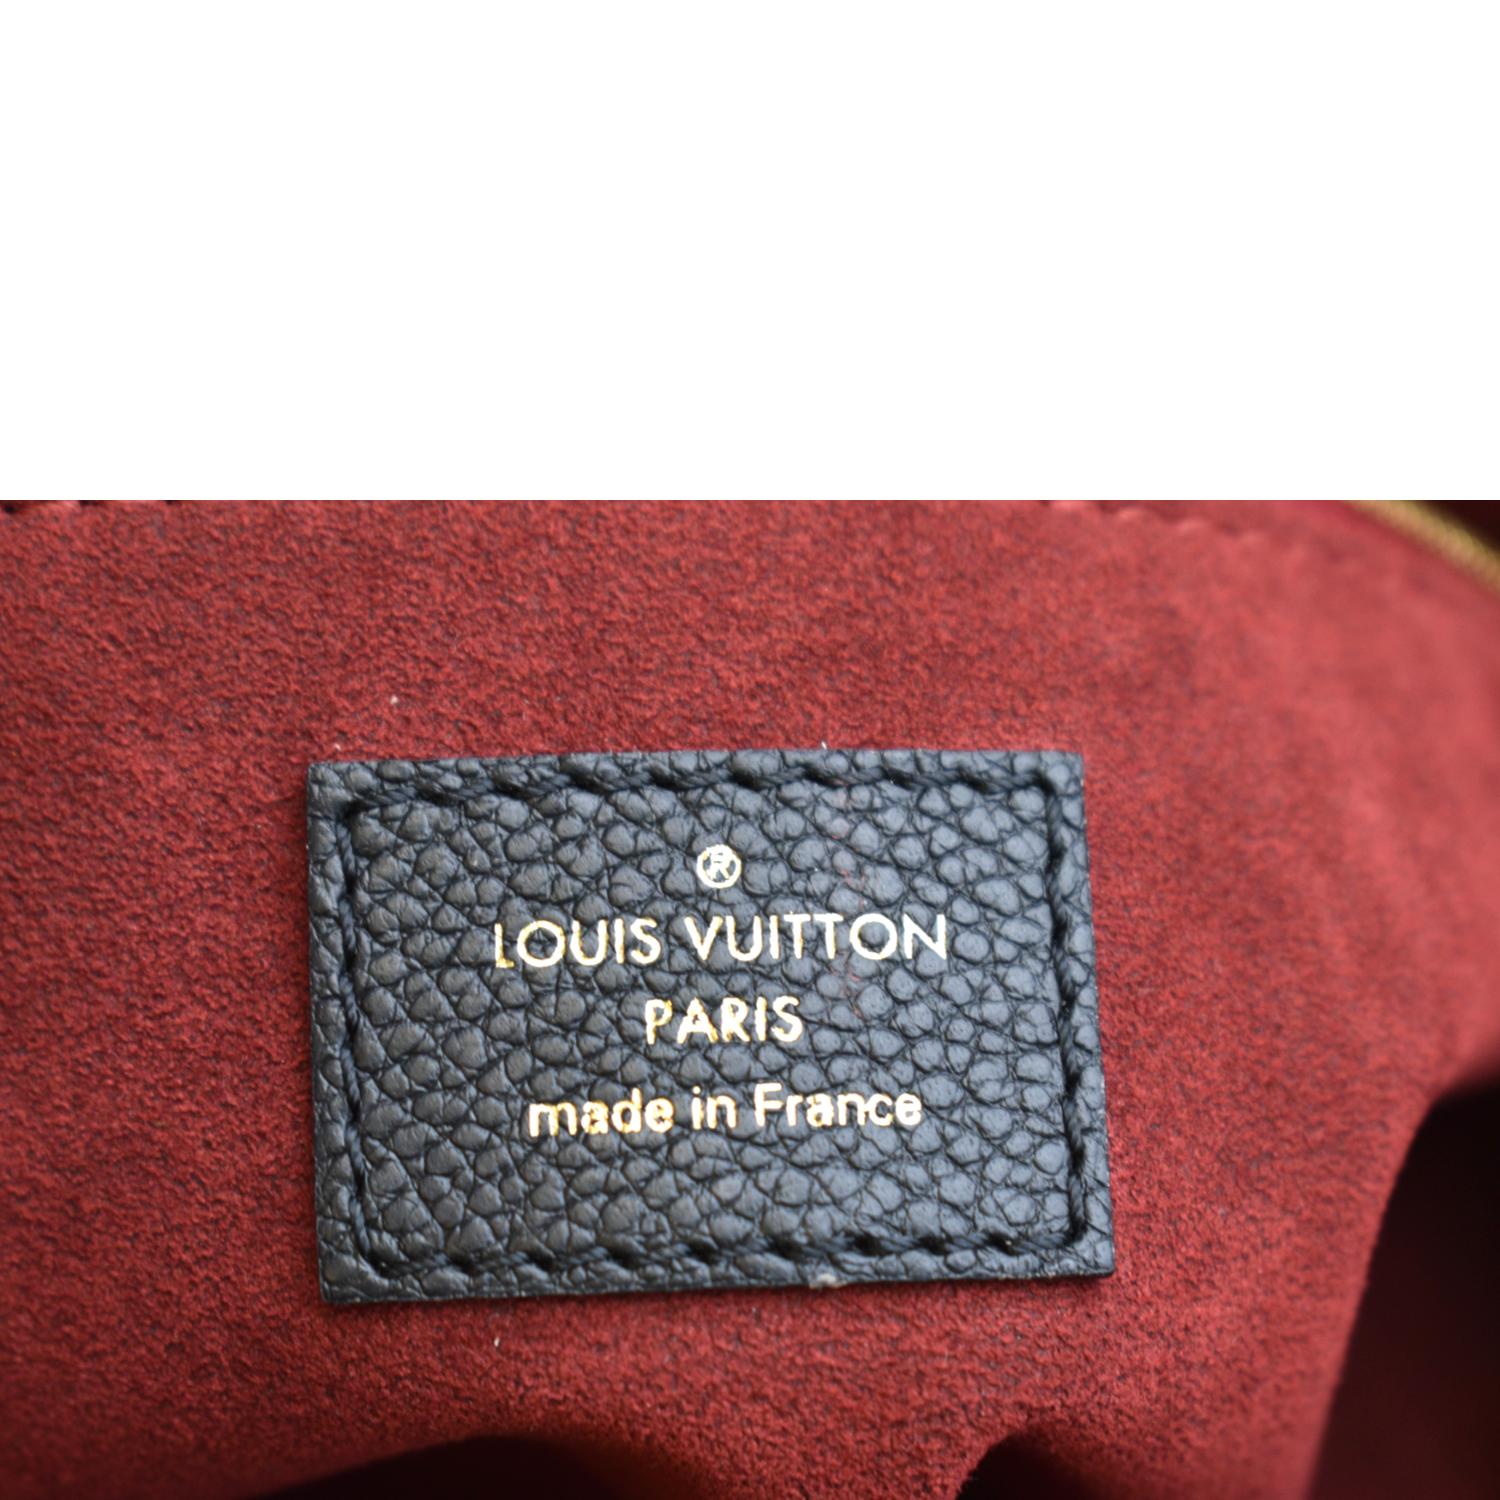 Louis Vuitton Onthego pm by Bellaris- BUYMA